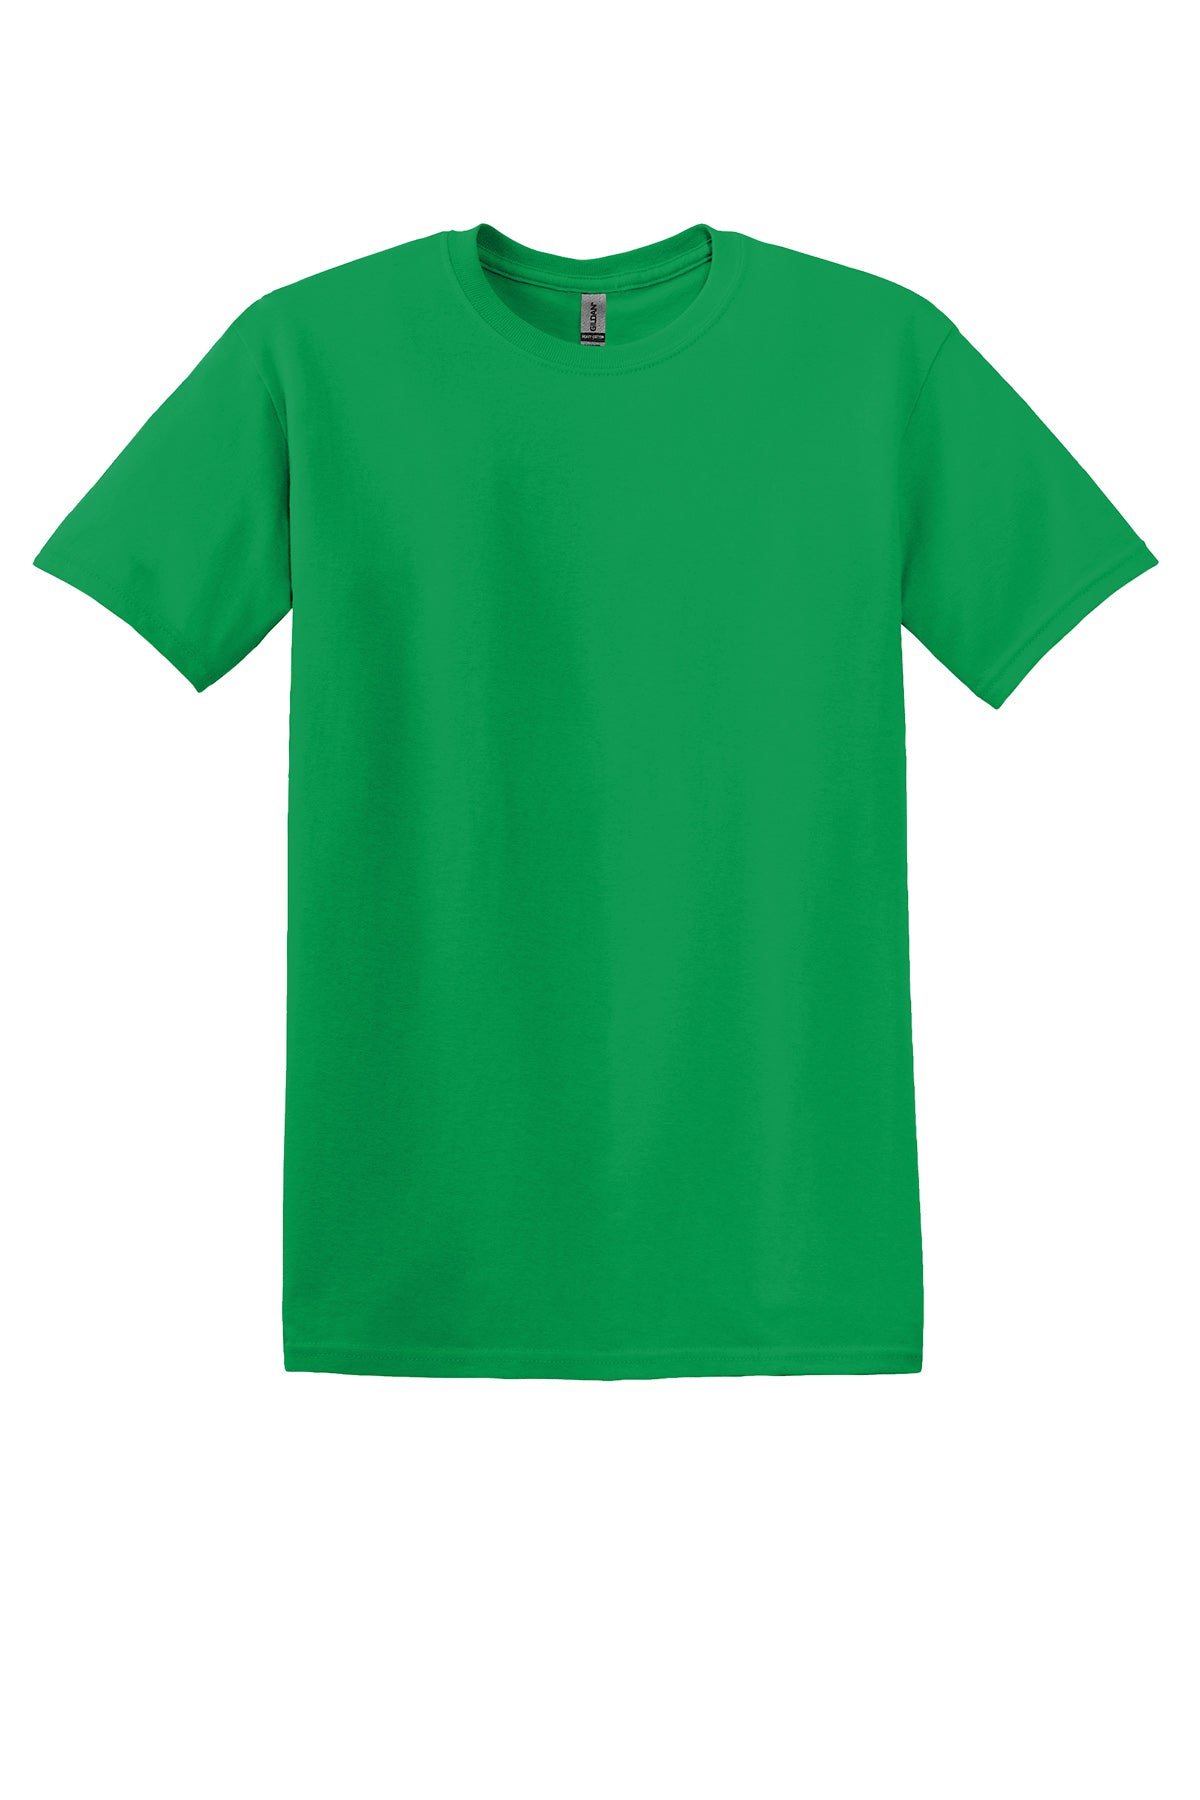 Gildan 5000B Youth T-Shirt Yth X-Small / Irish Green